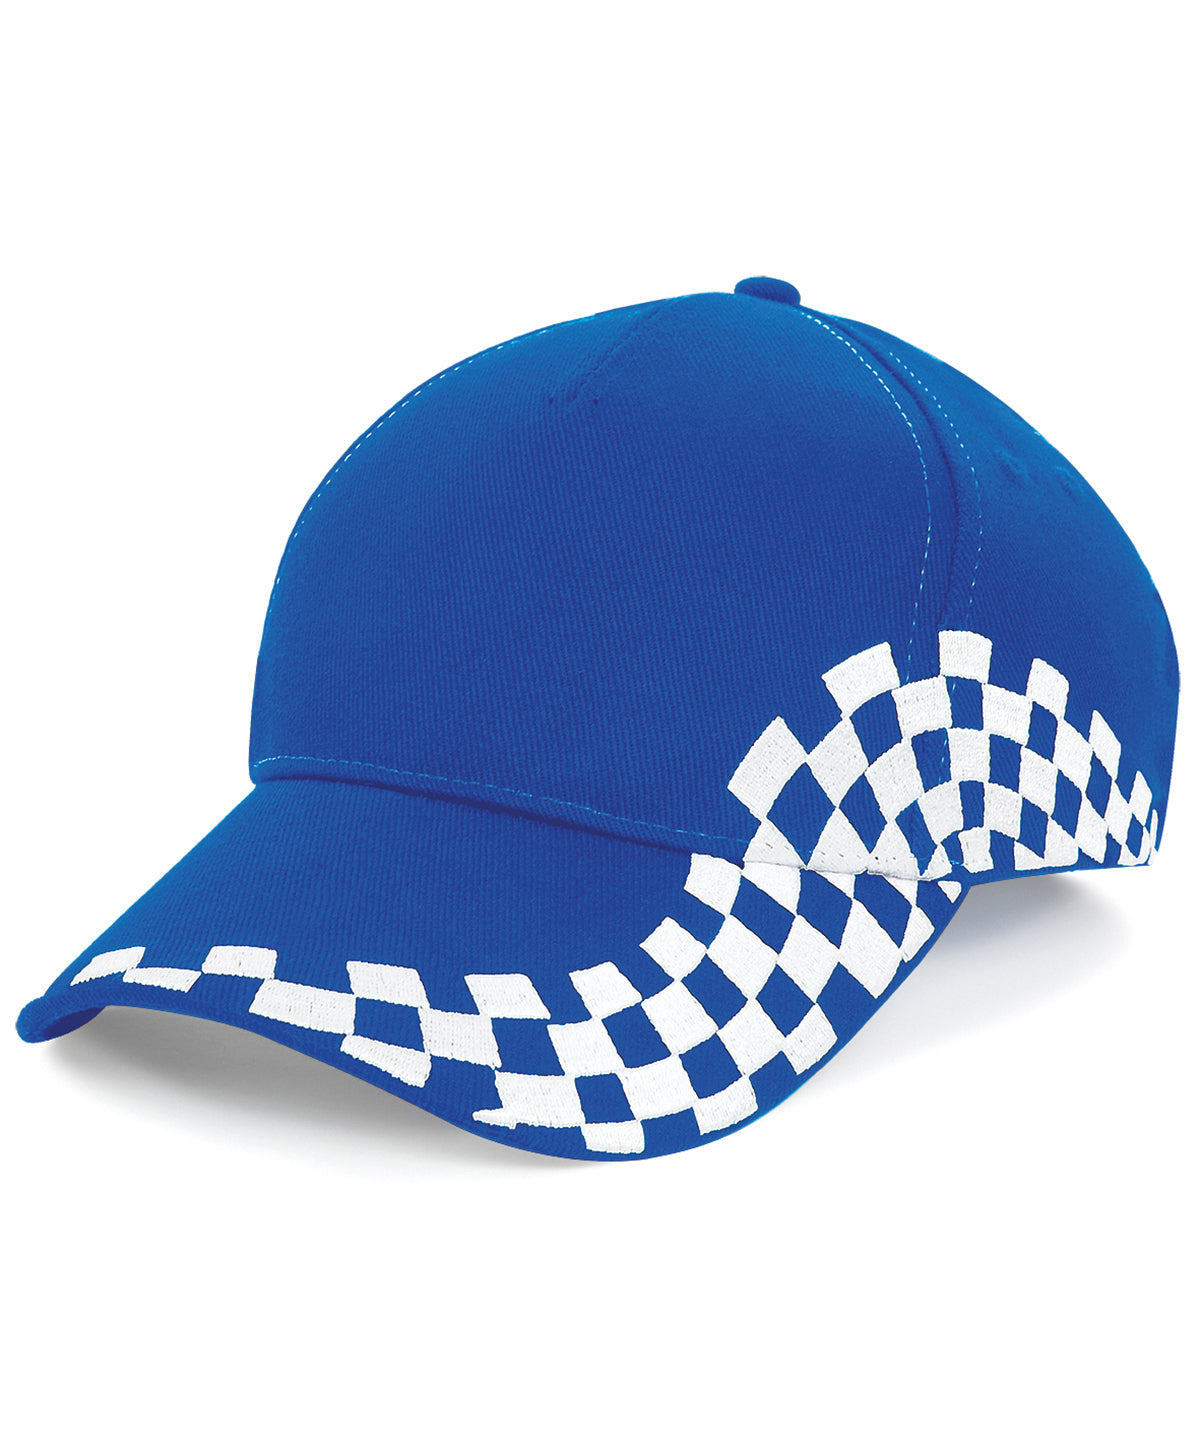 Personalised Caps - Royal Beechfield Grand Prix cap